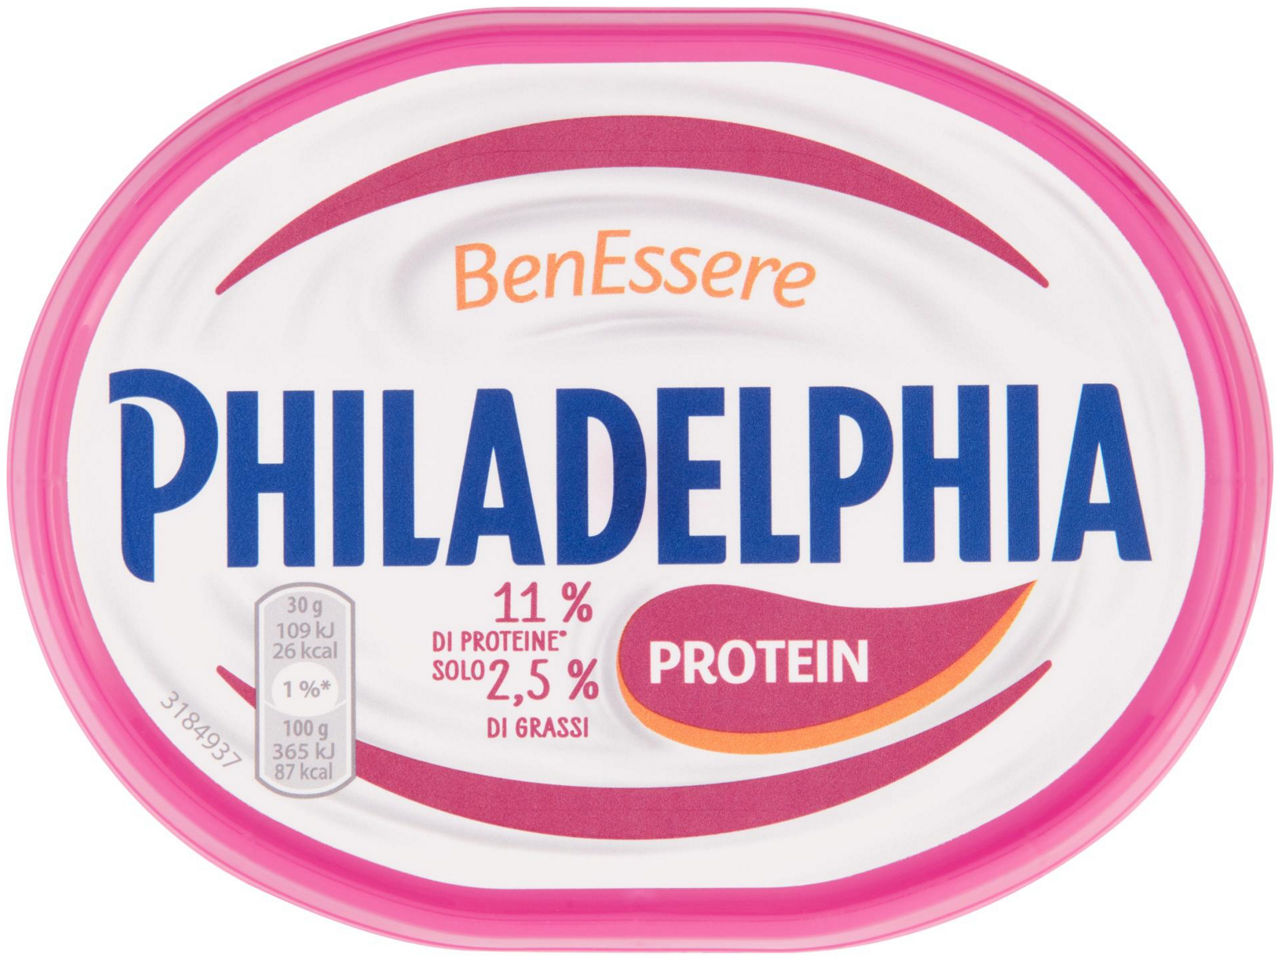 Philadelphia benessere protein formaggio fresco spalmabile proteico - 175 g